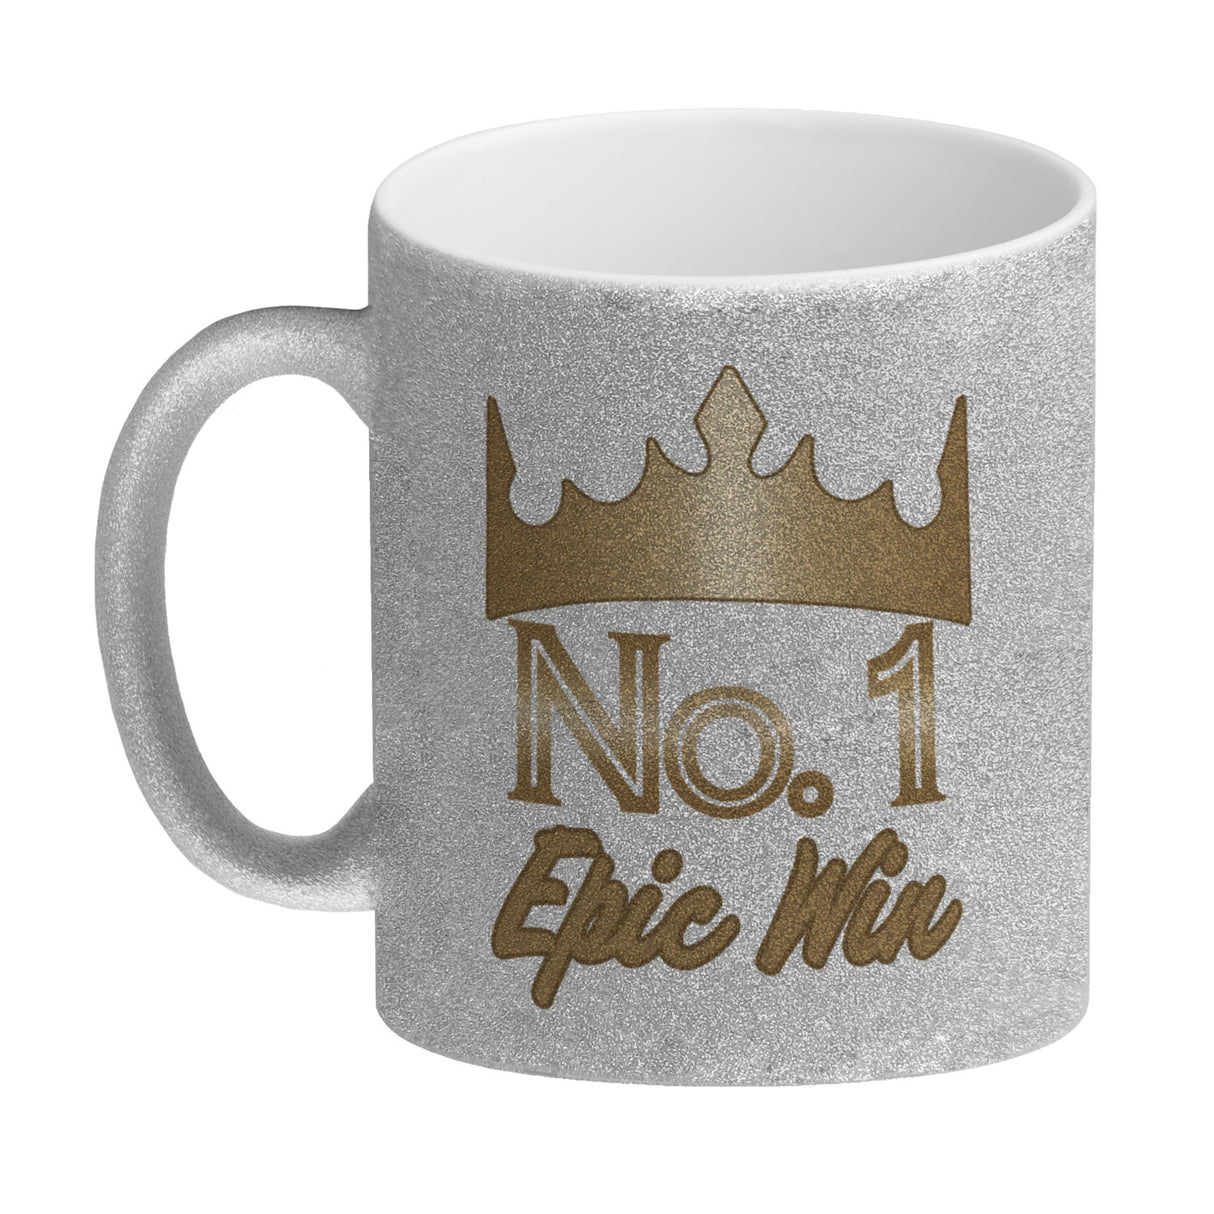 Epic Win Zocker Kaffeebecher für den Besten der Besten